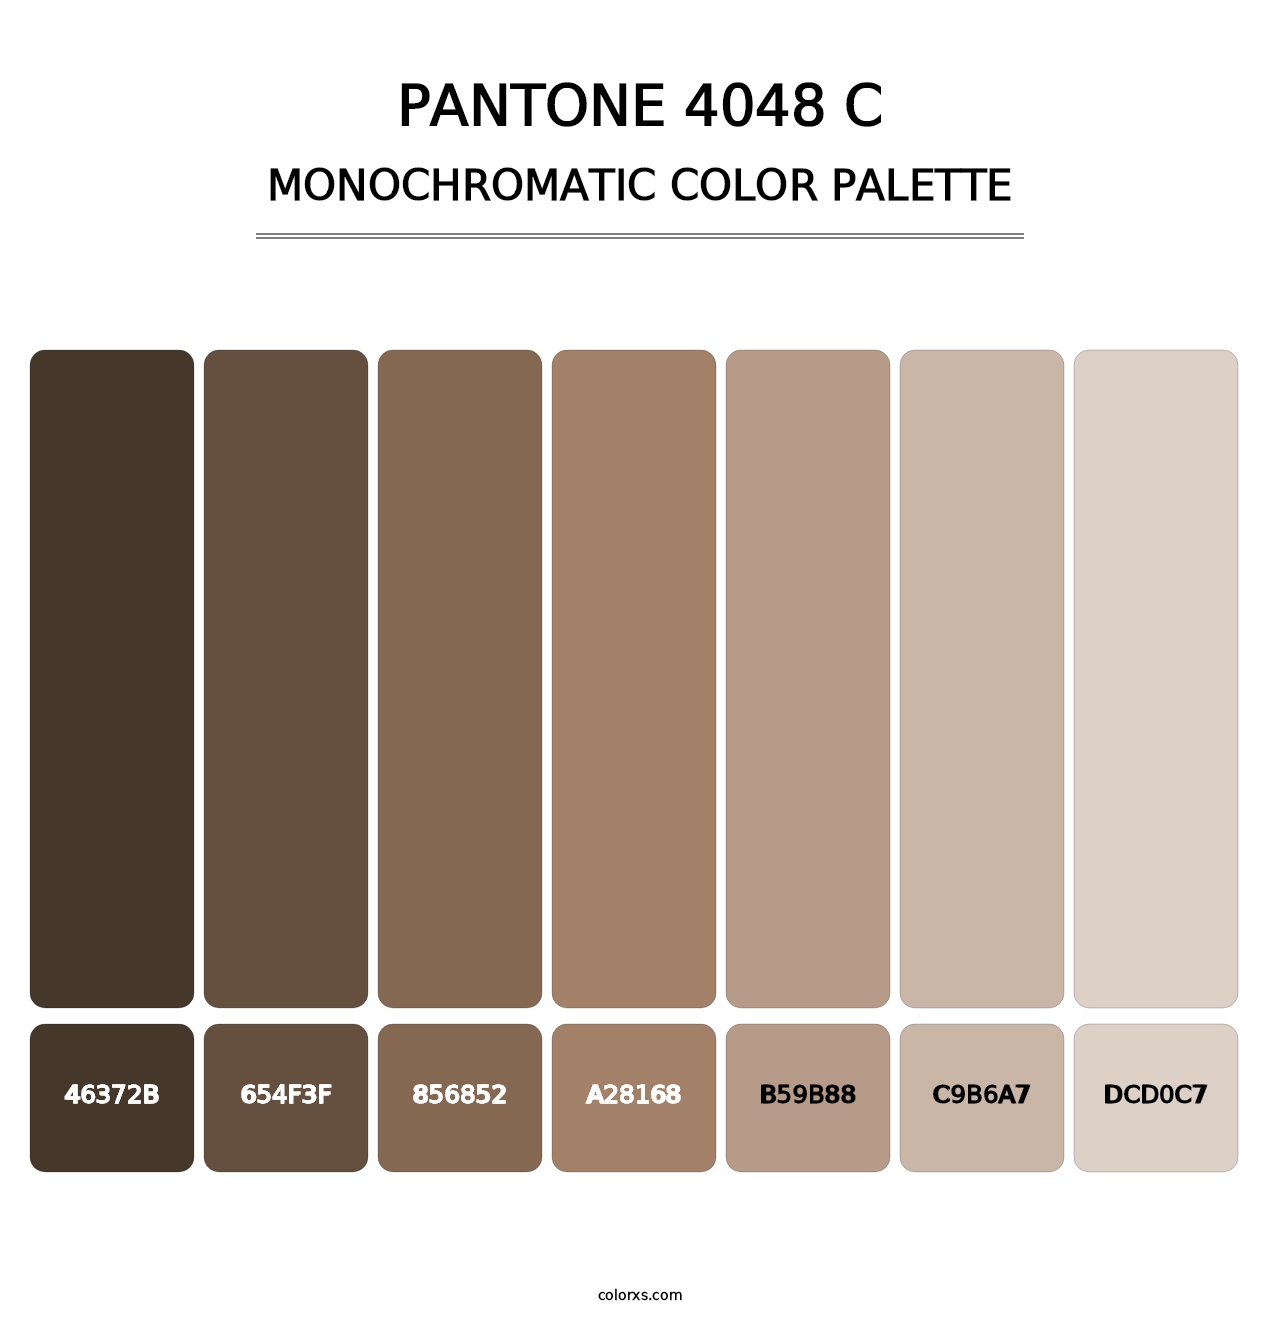 PANTONE 4048 C - Monochromatic Color Palette